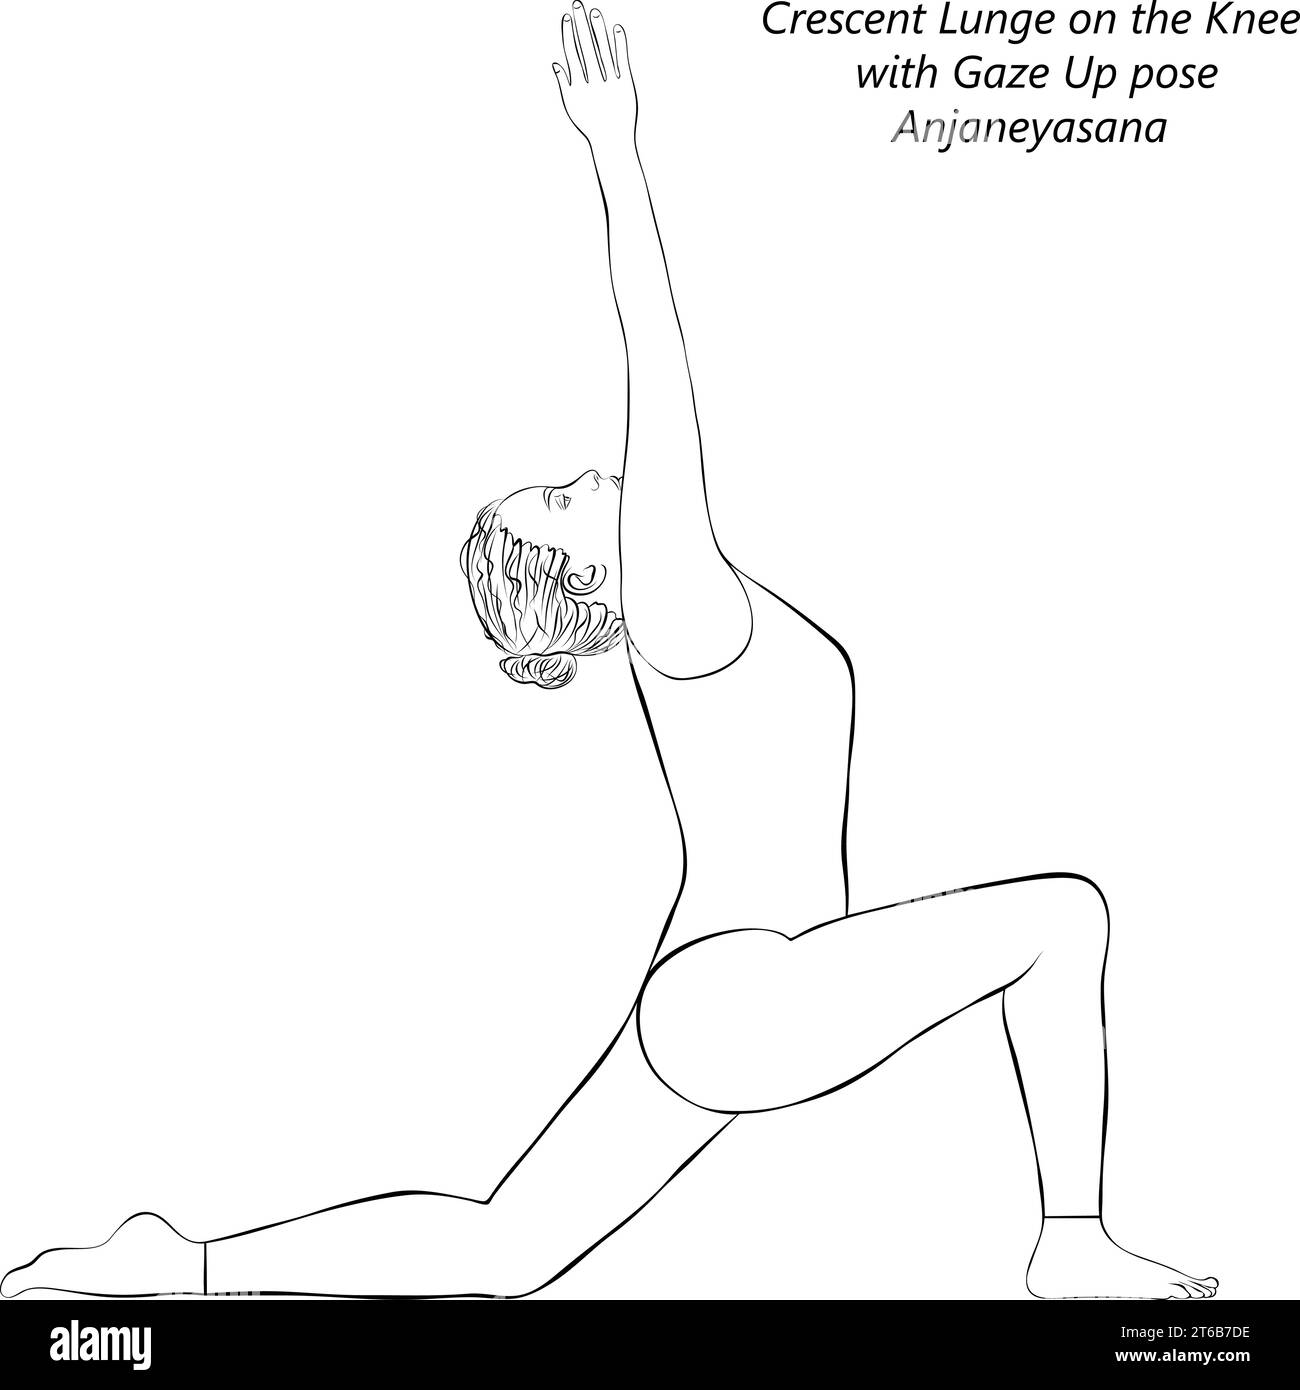 Schizzo di una giovane donna che fa yoga Anjaneyasana. Crescent Lunge sul ginocchio con la posa dello sguardo rivolto verso l'alto. Illustrazione vettoriale isolata. Illustrazione Vettoriale